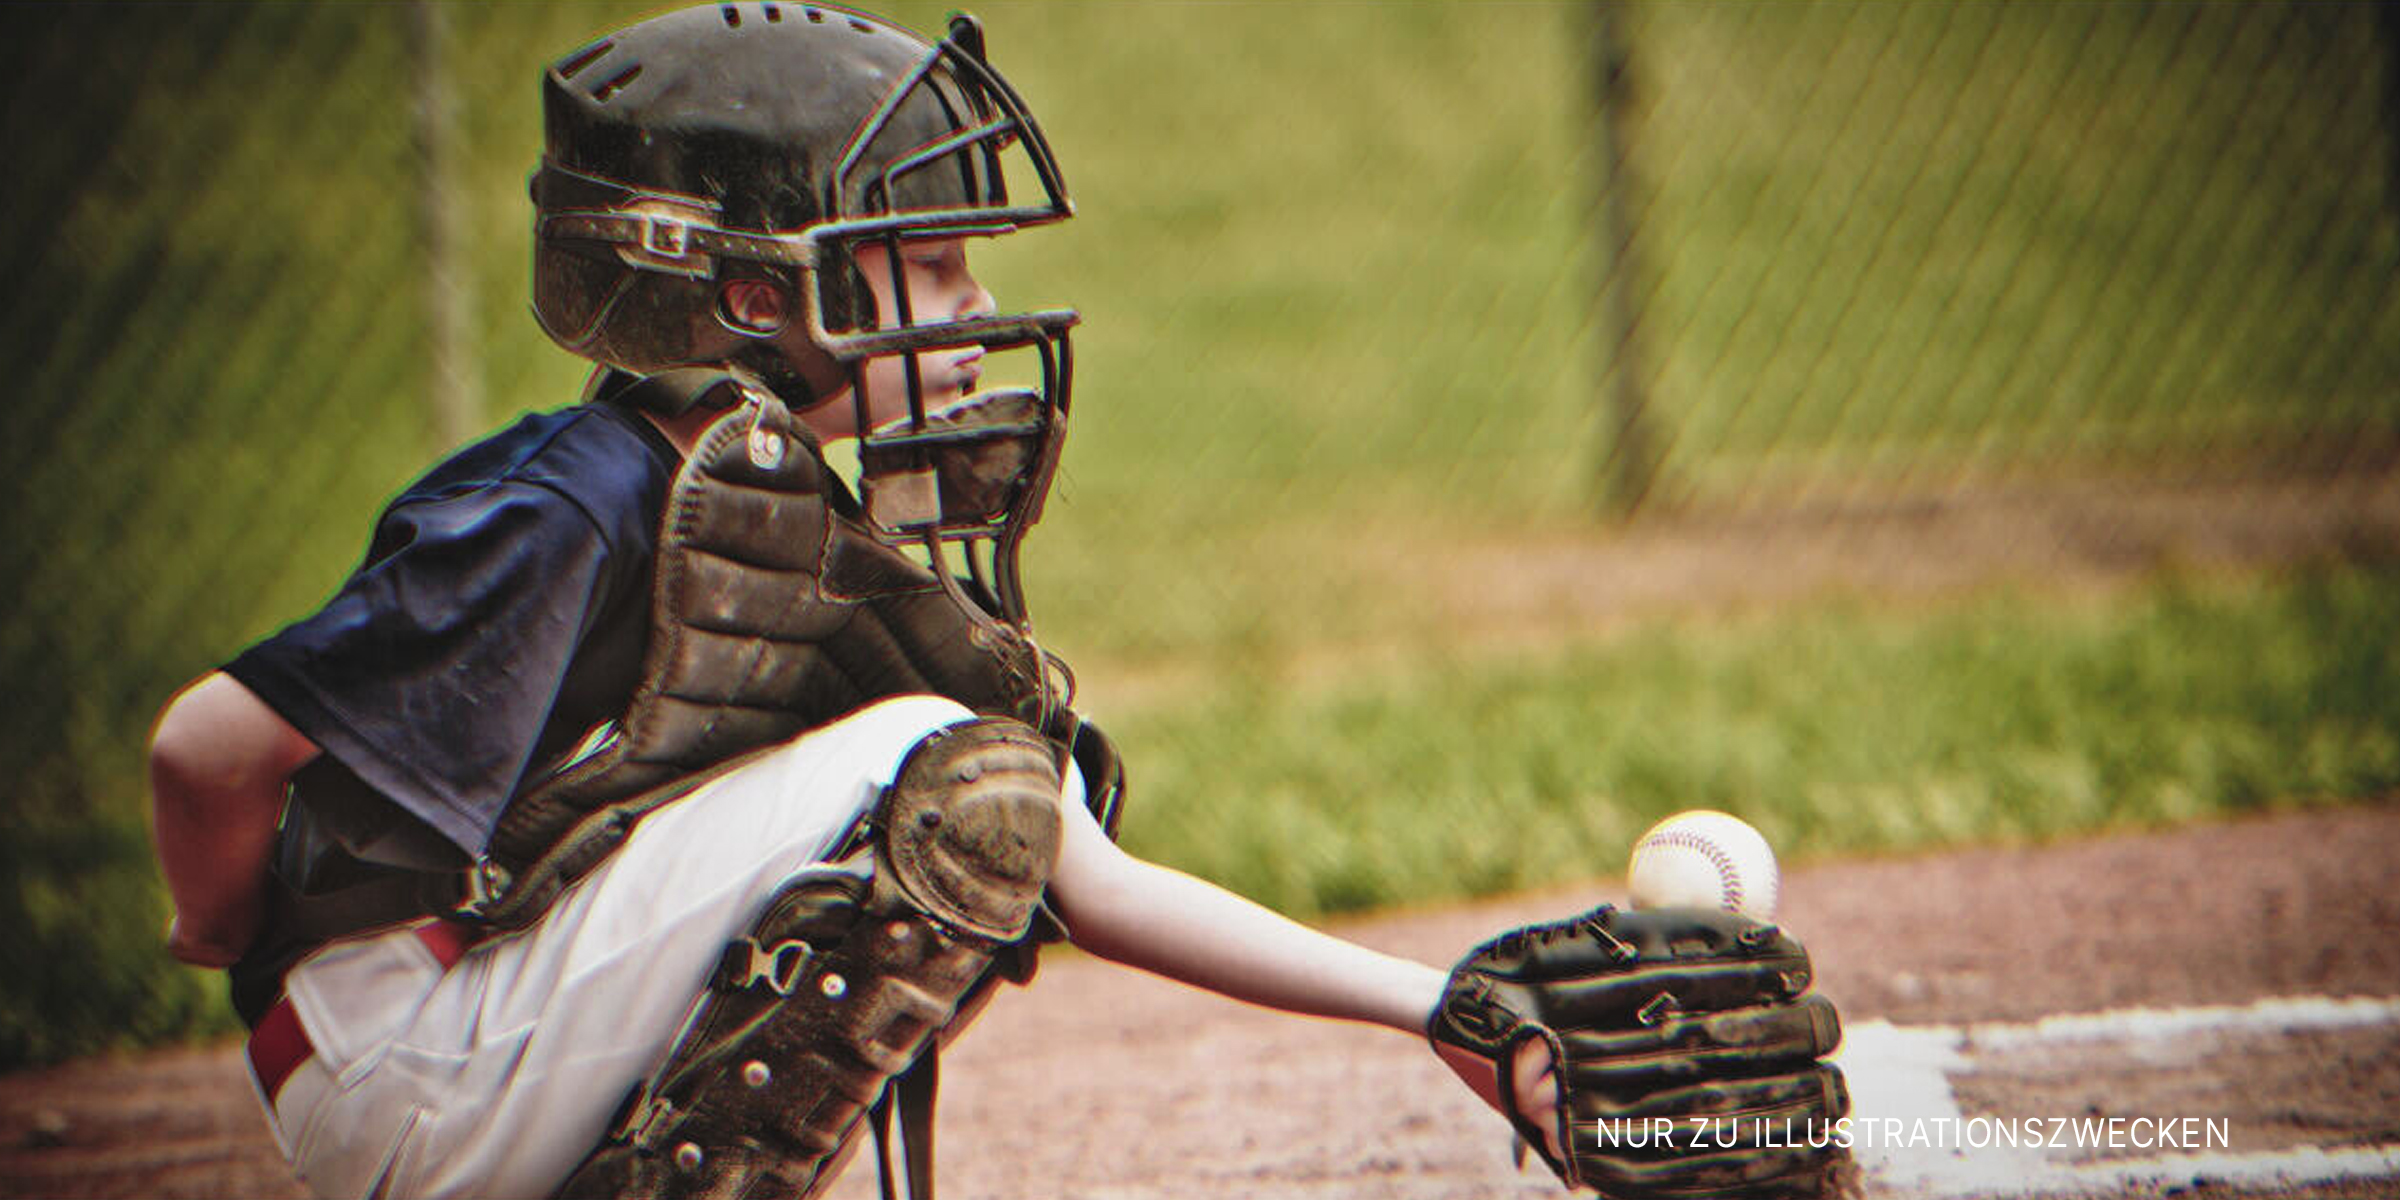 Junge spielt Baseball. | Quelle: Shutterstock